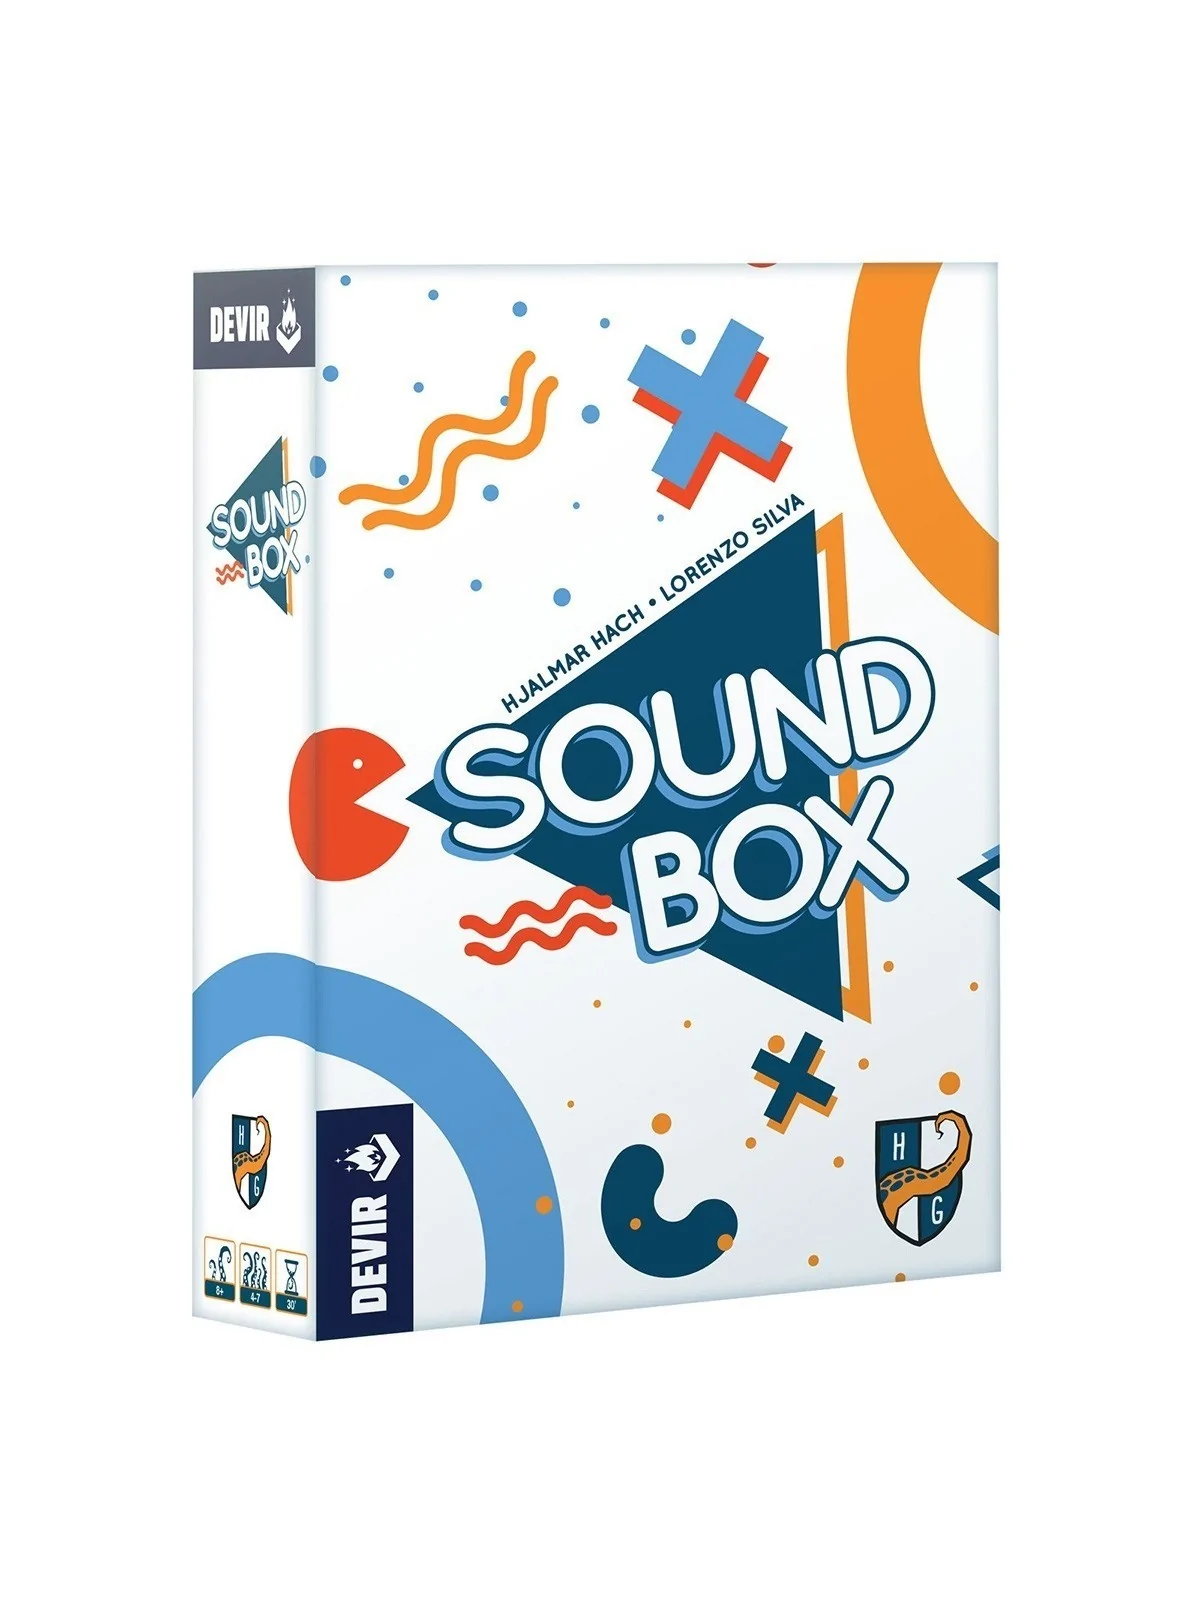 Comprar Sound Box barato al mejor precio 17,99 € de Devir